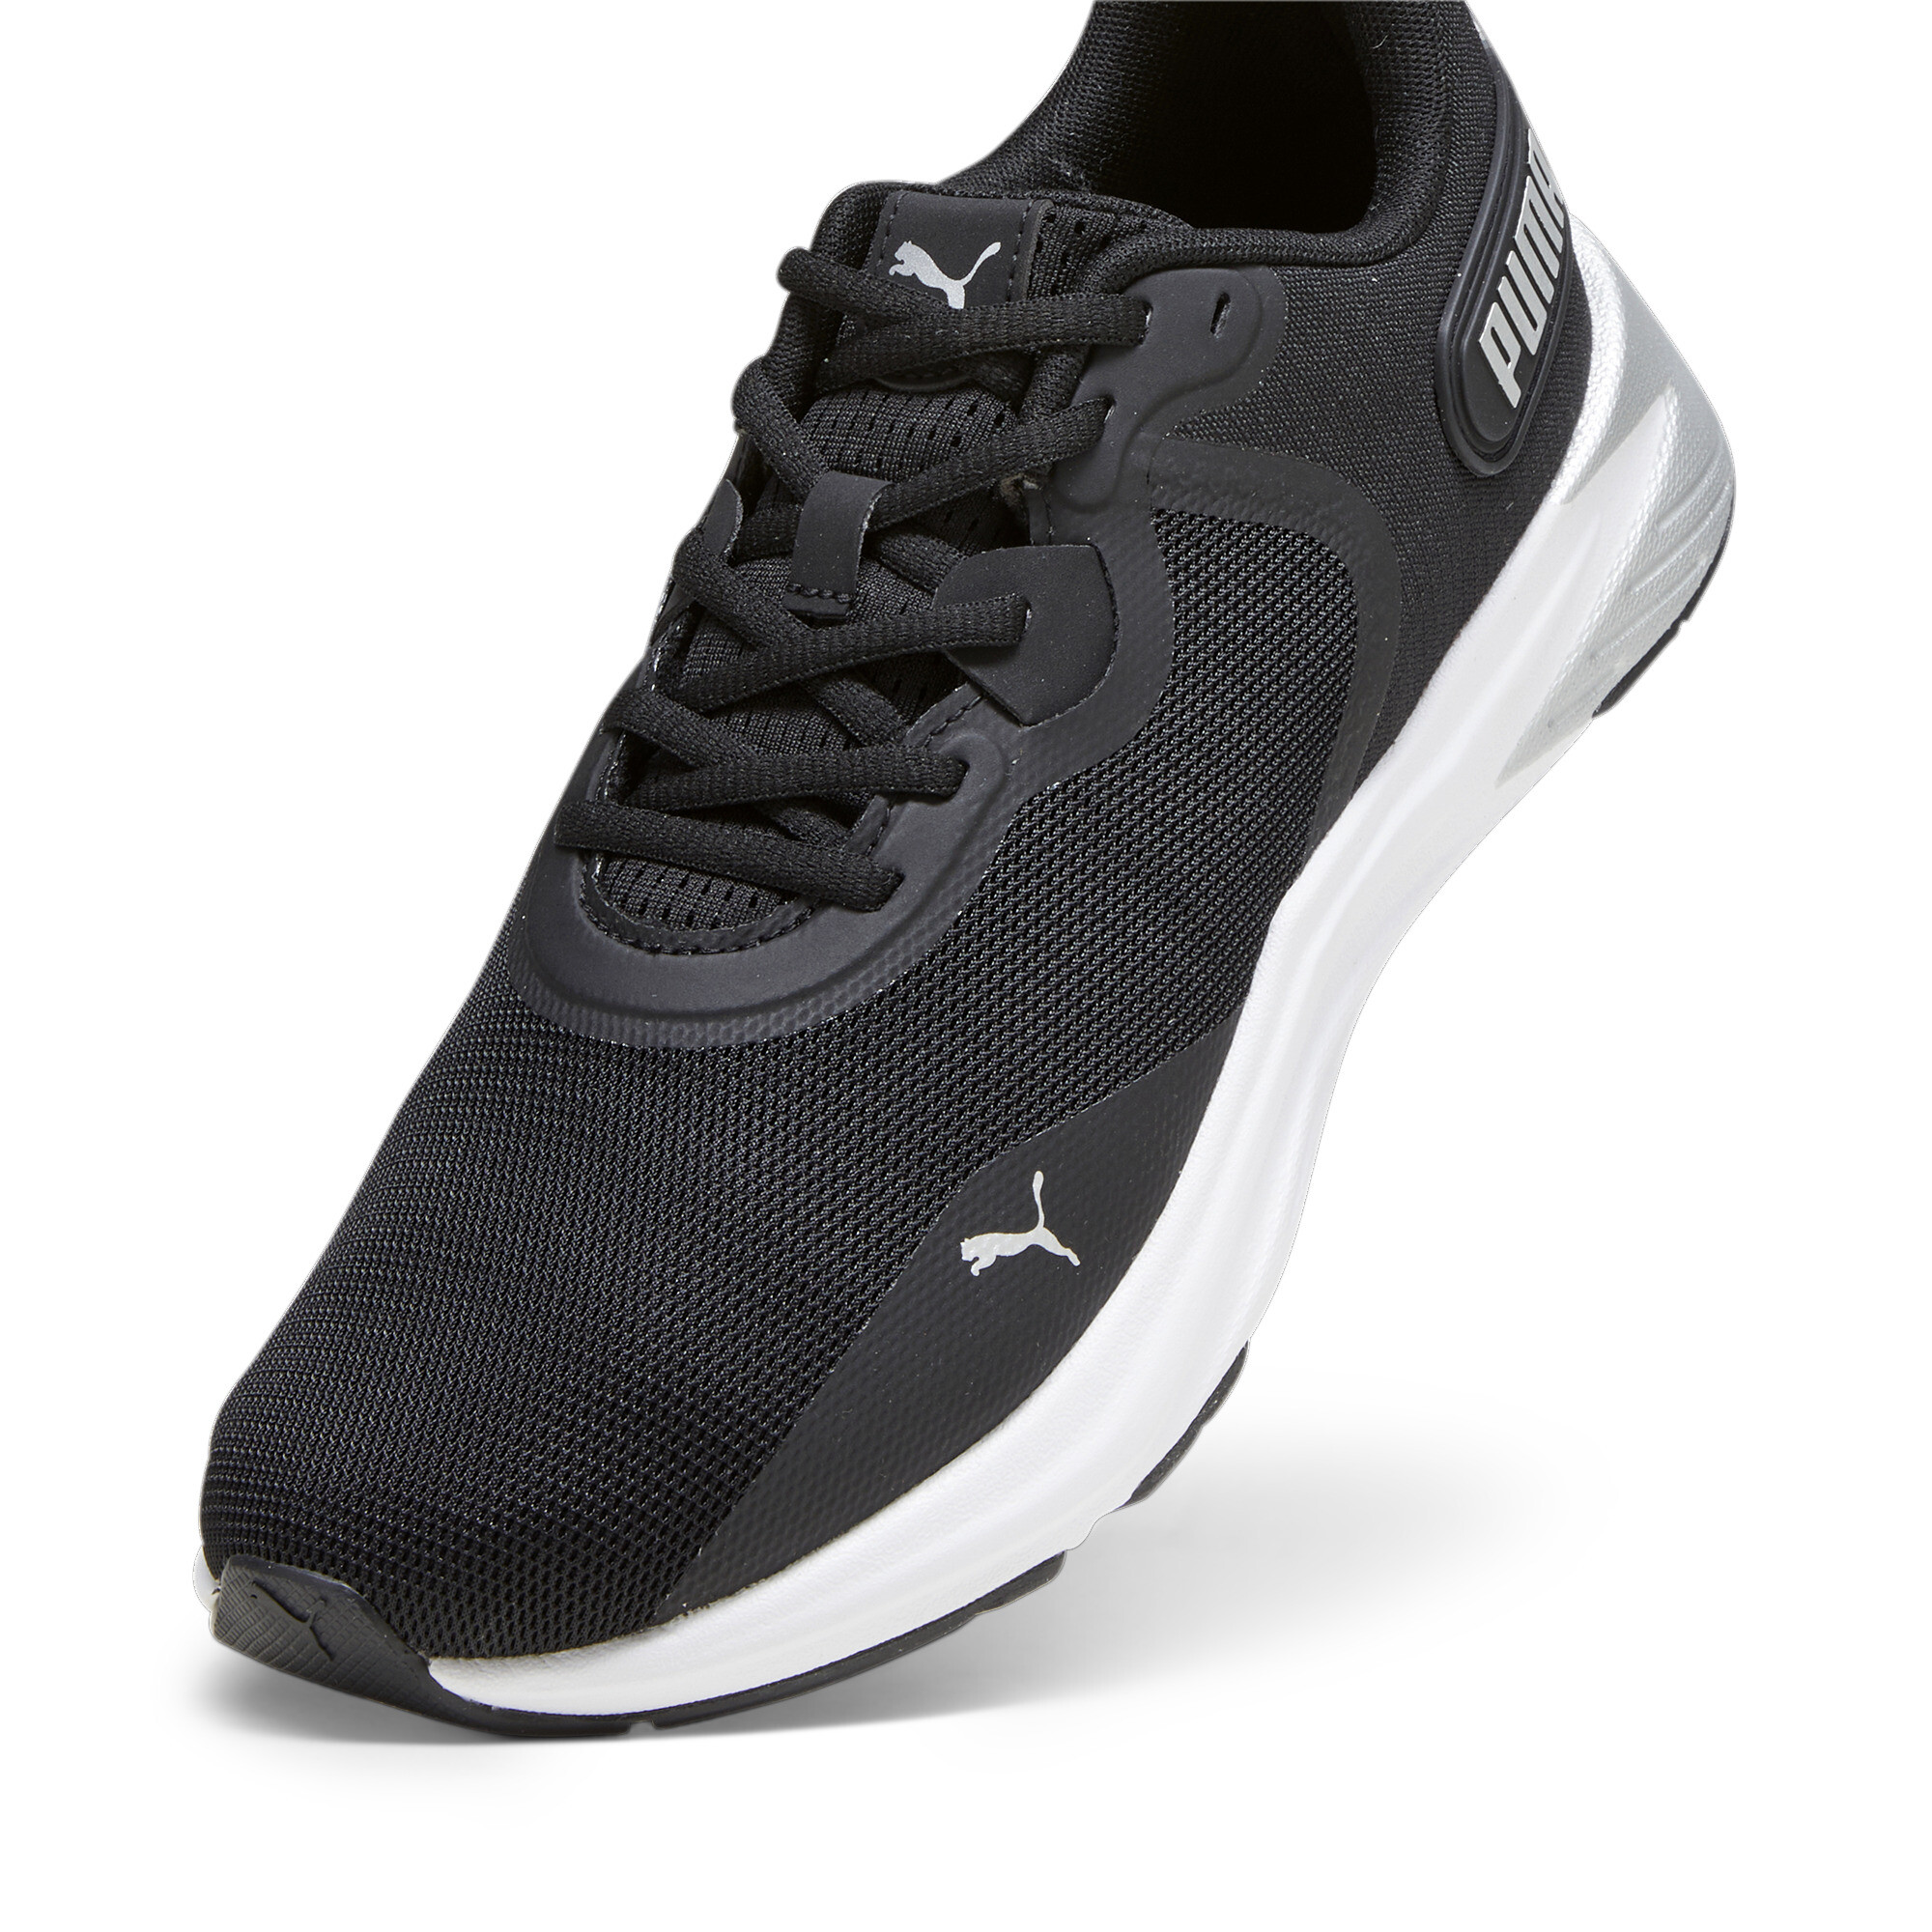 Puma Disperse XT 3 Training Shoes, Black, Size 38, Shoes